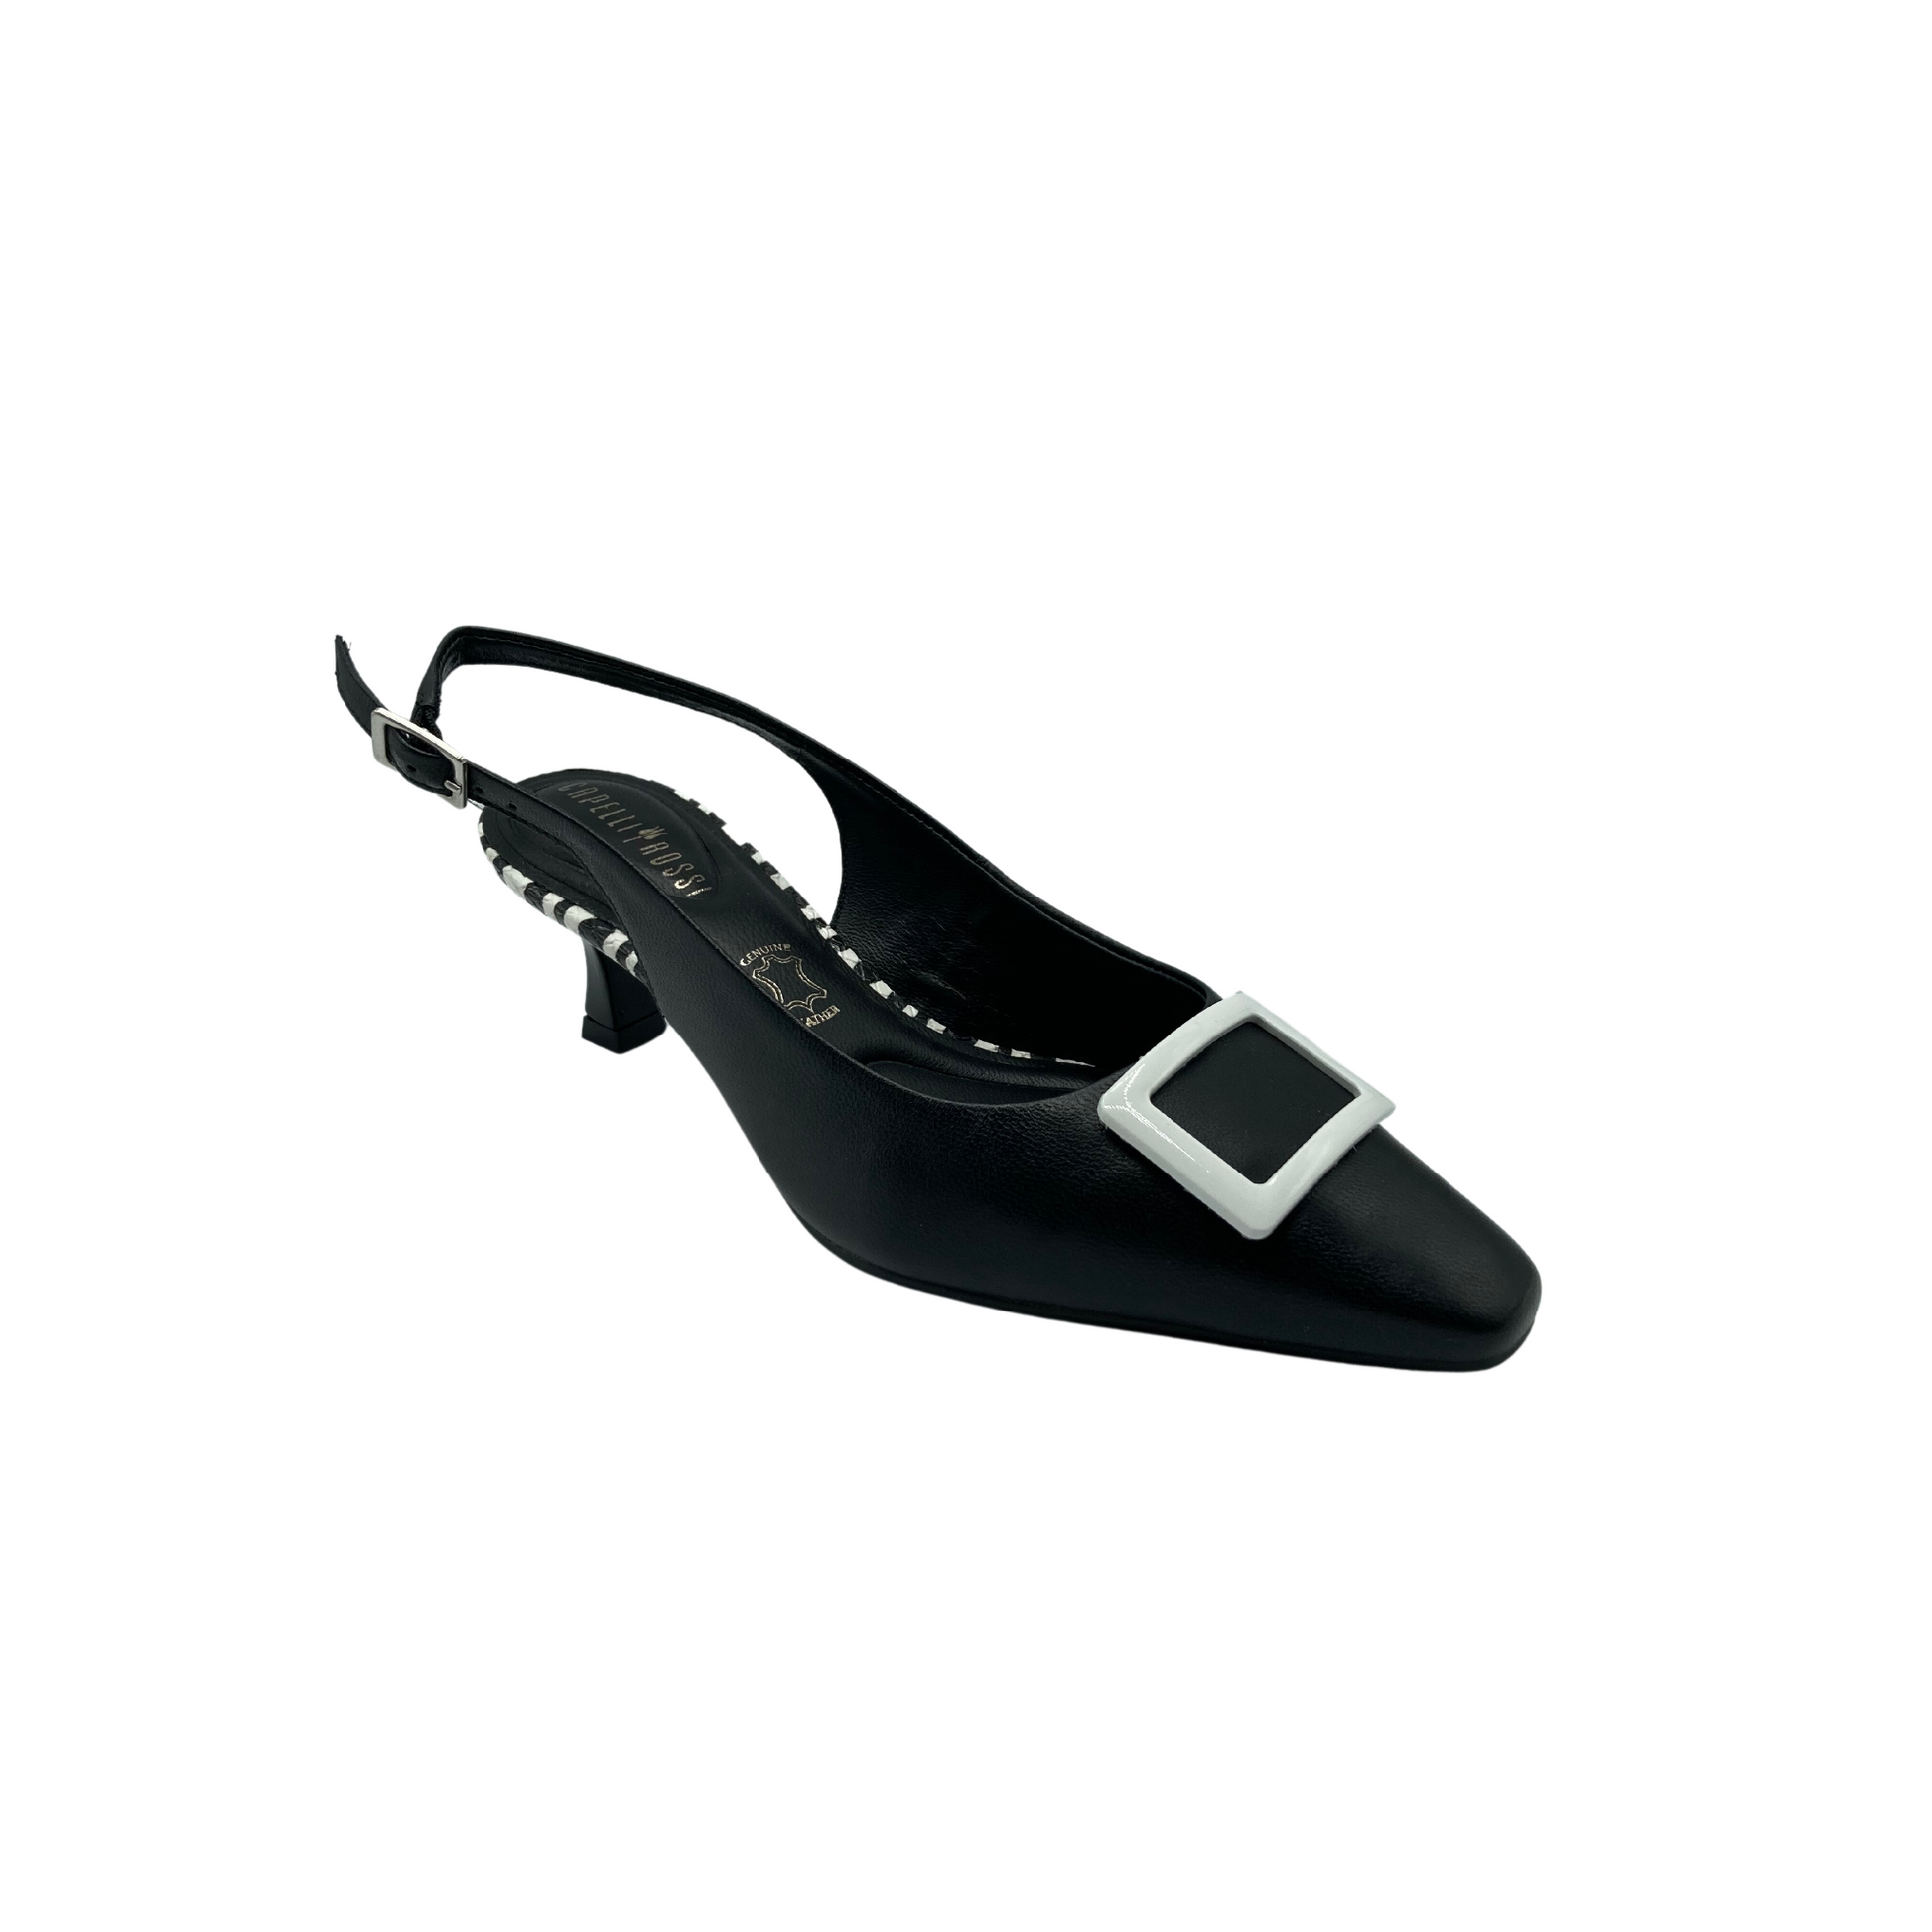 Angled side view of a black slingback shoe